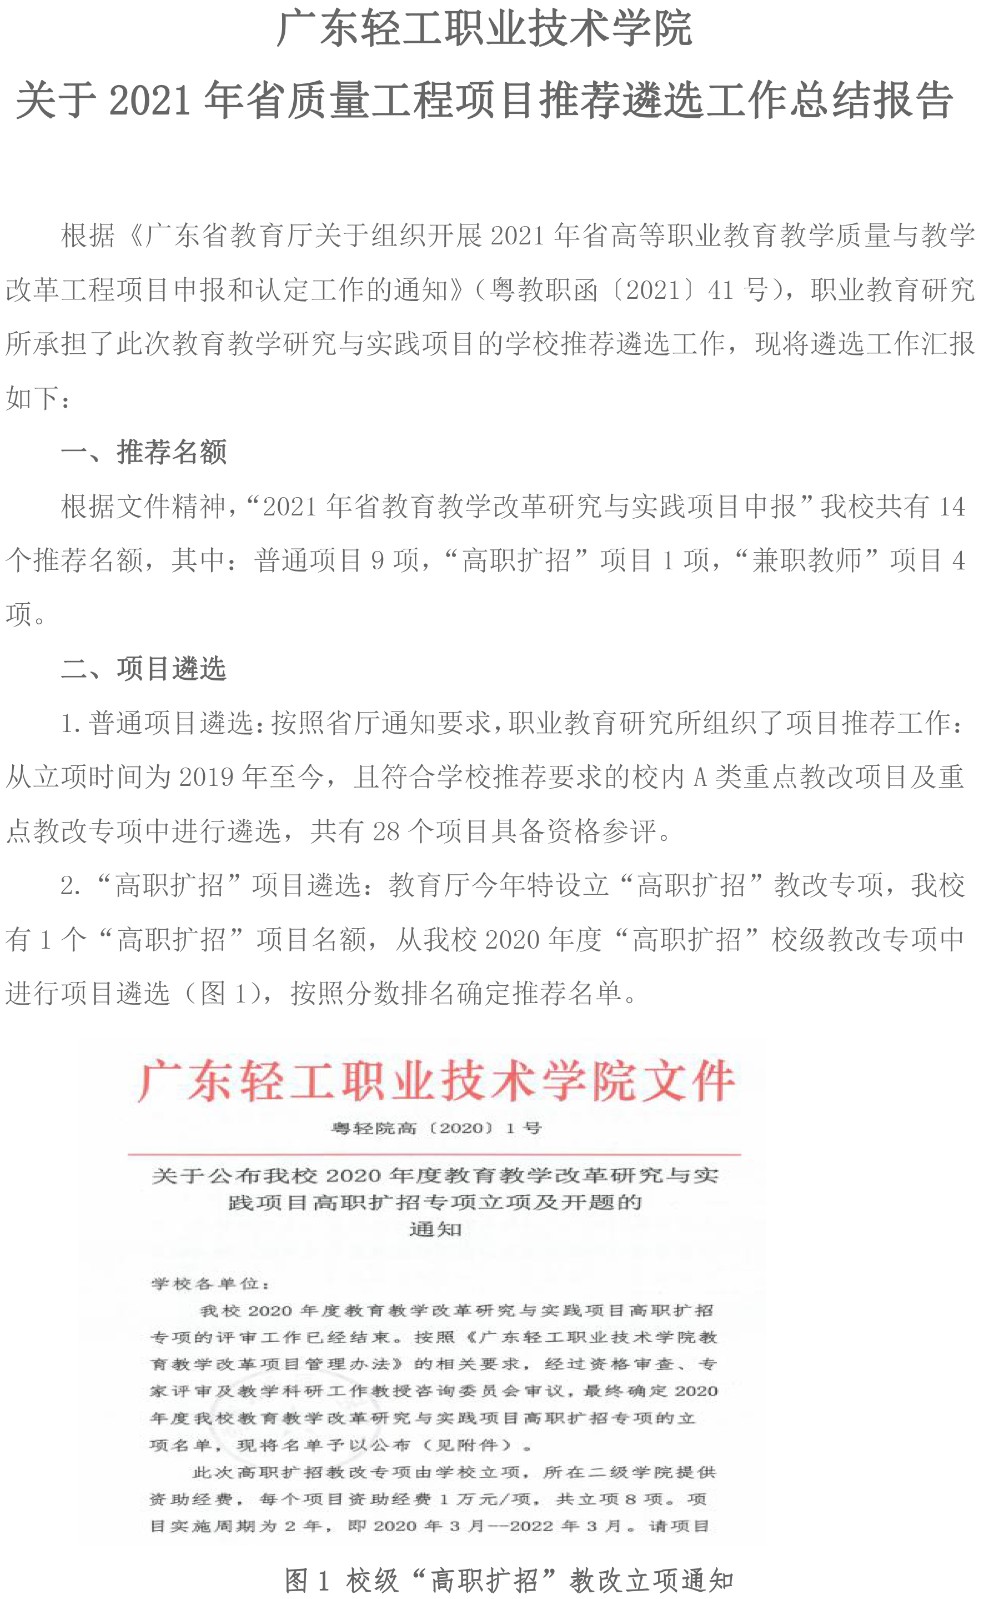 附件1：广东轻工职业技术学院关于2021年省质量工程项目的推荐遴选工作总结报告-1.jpg